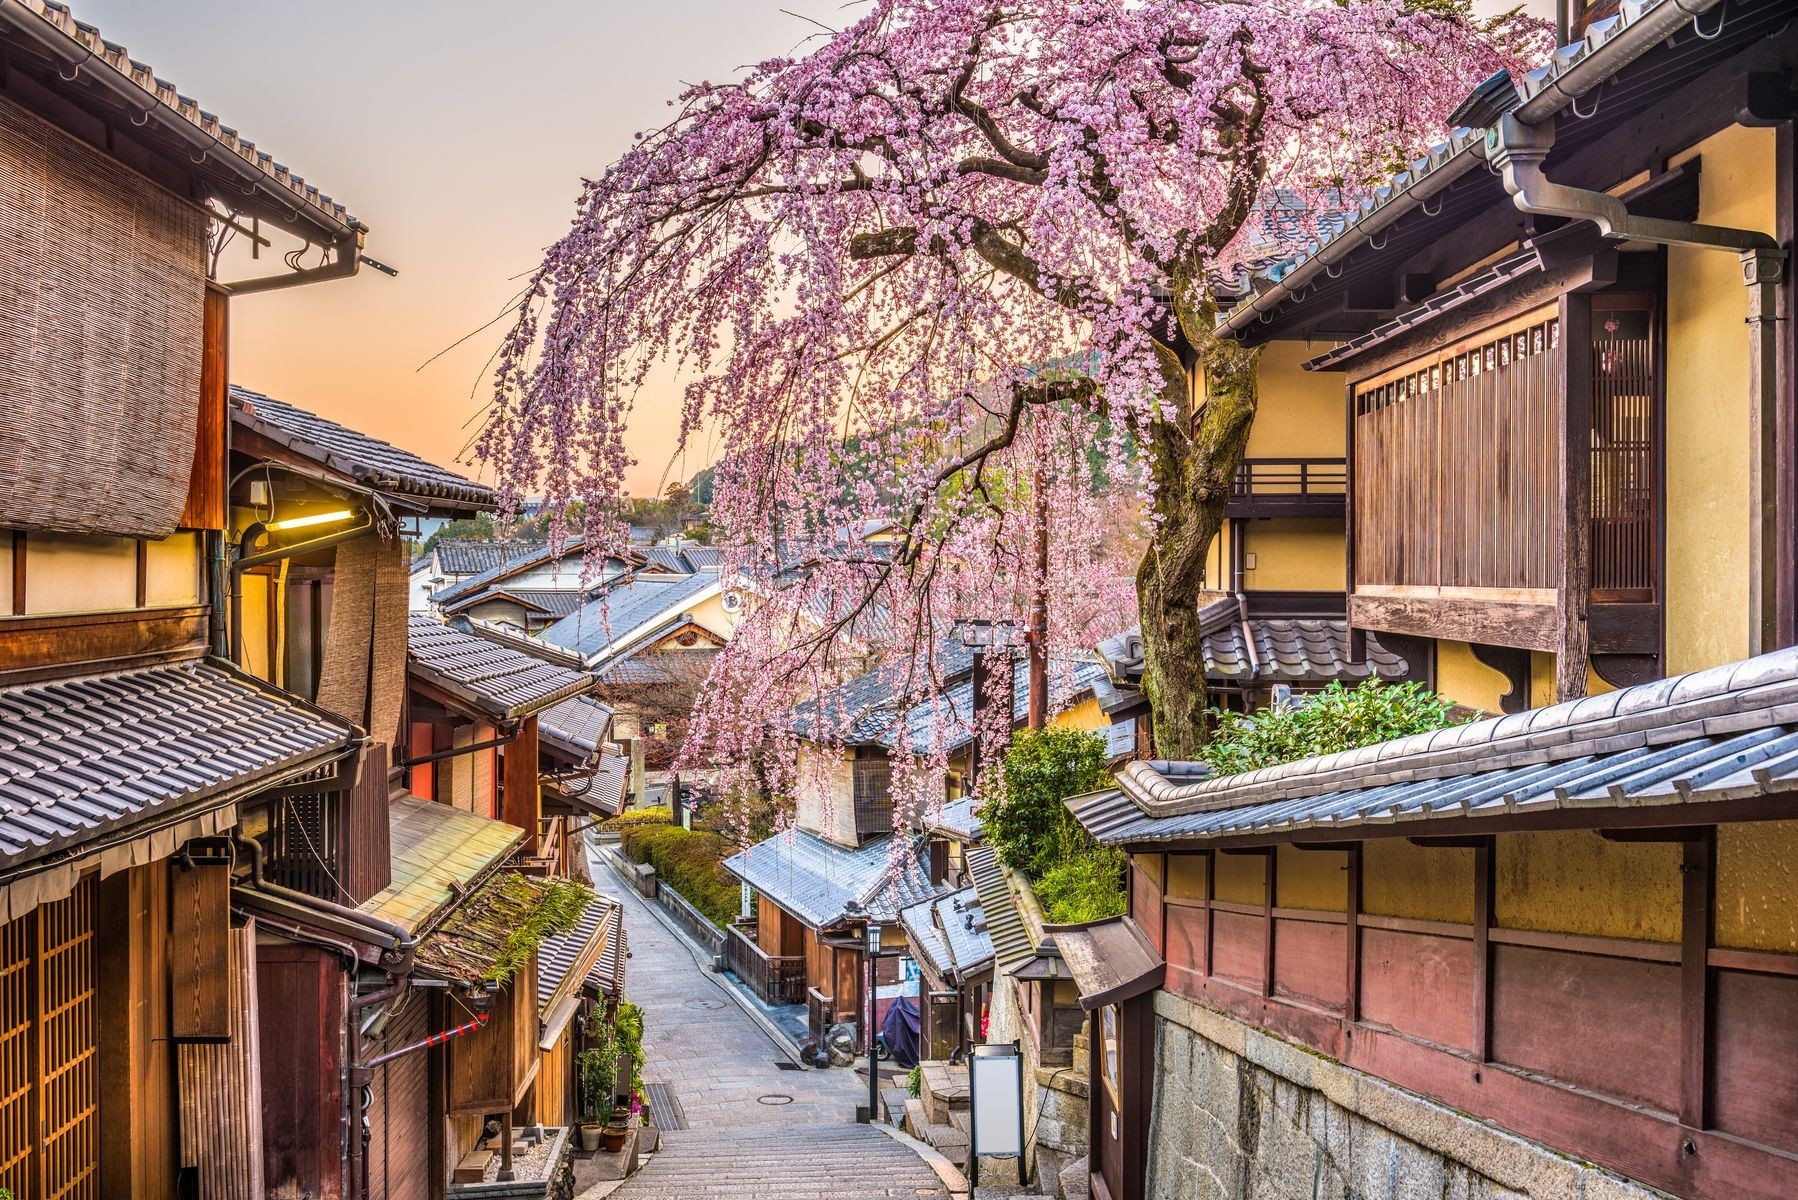 Il n’y a pas de meilleur moment dans l’année pour visiter le Japon, mais le printemps est une saison particulièrement spéciale en raison de l’abondance des cerisiers en fleurs à cette période. Les gens qui visitent Kyoto auront l’embarras du choix pour admirer les <a href="https://www.jrailpass.com/blog/fr/floraison-cerisiers-sakura-kyoto" rel="noreferrer noopener">fleurs</a> de près, tout en ayant la possibilité de goûter à la <a href="https://japon-fr.com/kyoto-gastronomie.htm" rel="noreferrer noopener">cuisine de classe mondiale</a> et de profiter de la riche scène <a href="https://www.japan-experience.com/fr/decouvrir/kyoto/sortir-voir-boire/arts-traditionnels-gion-corner-kyoto" rel="noreferrer noopener">artistique</a>.